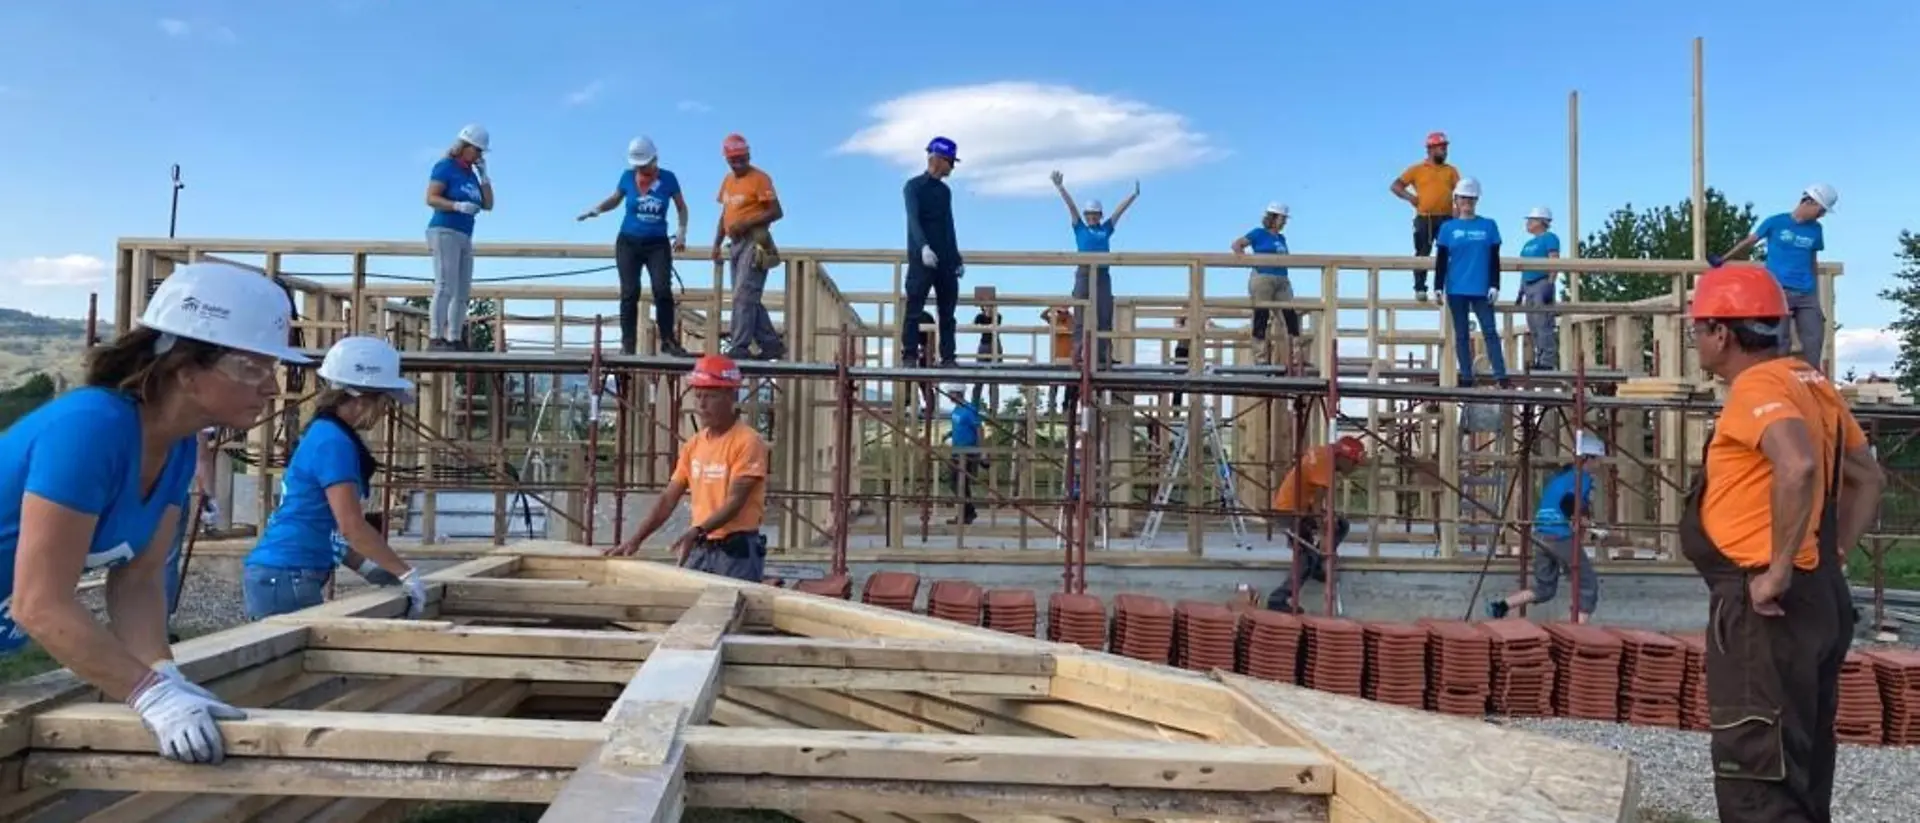 Eine große Gruppe von ehrenamtlichen Helfern hilft auf einer Baustelle mit, ein Haus zu bauen.